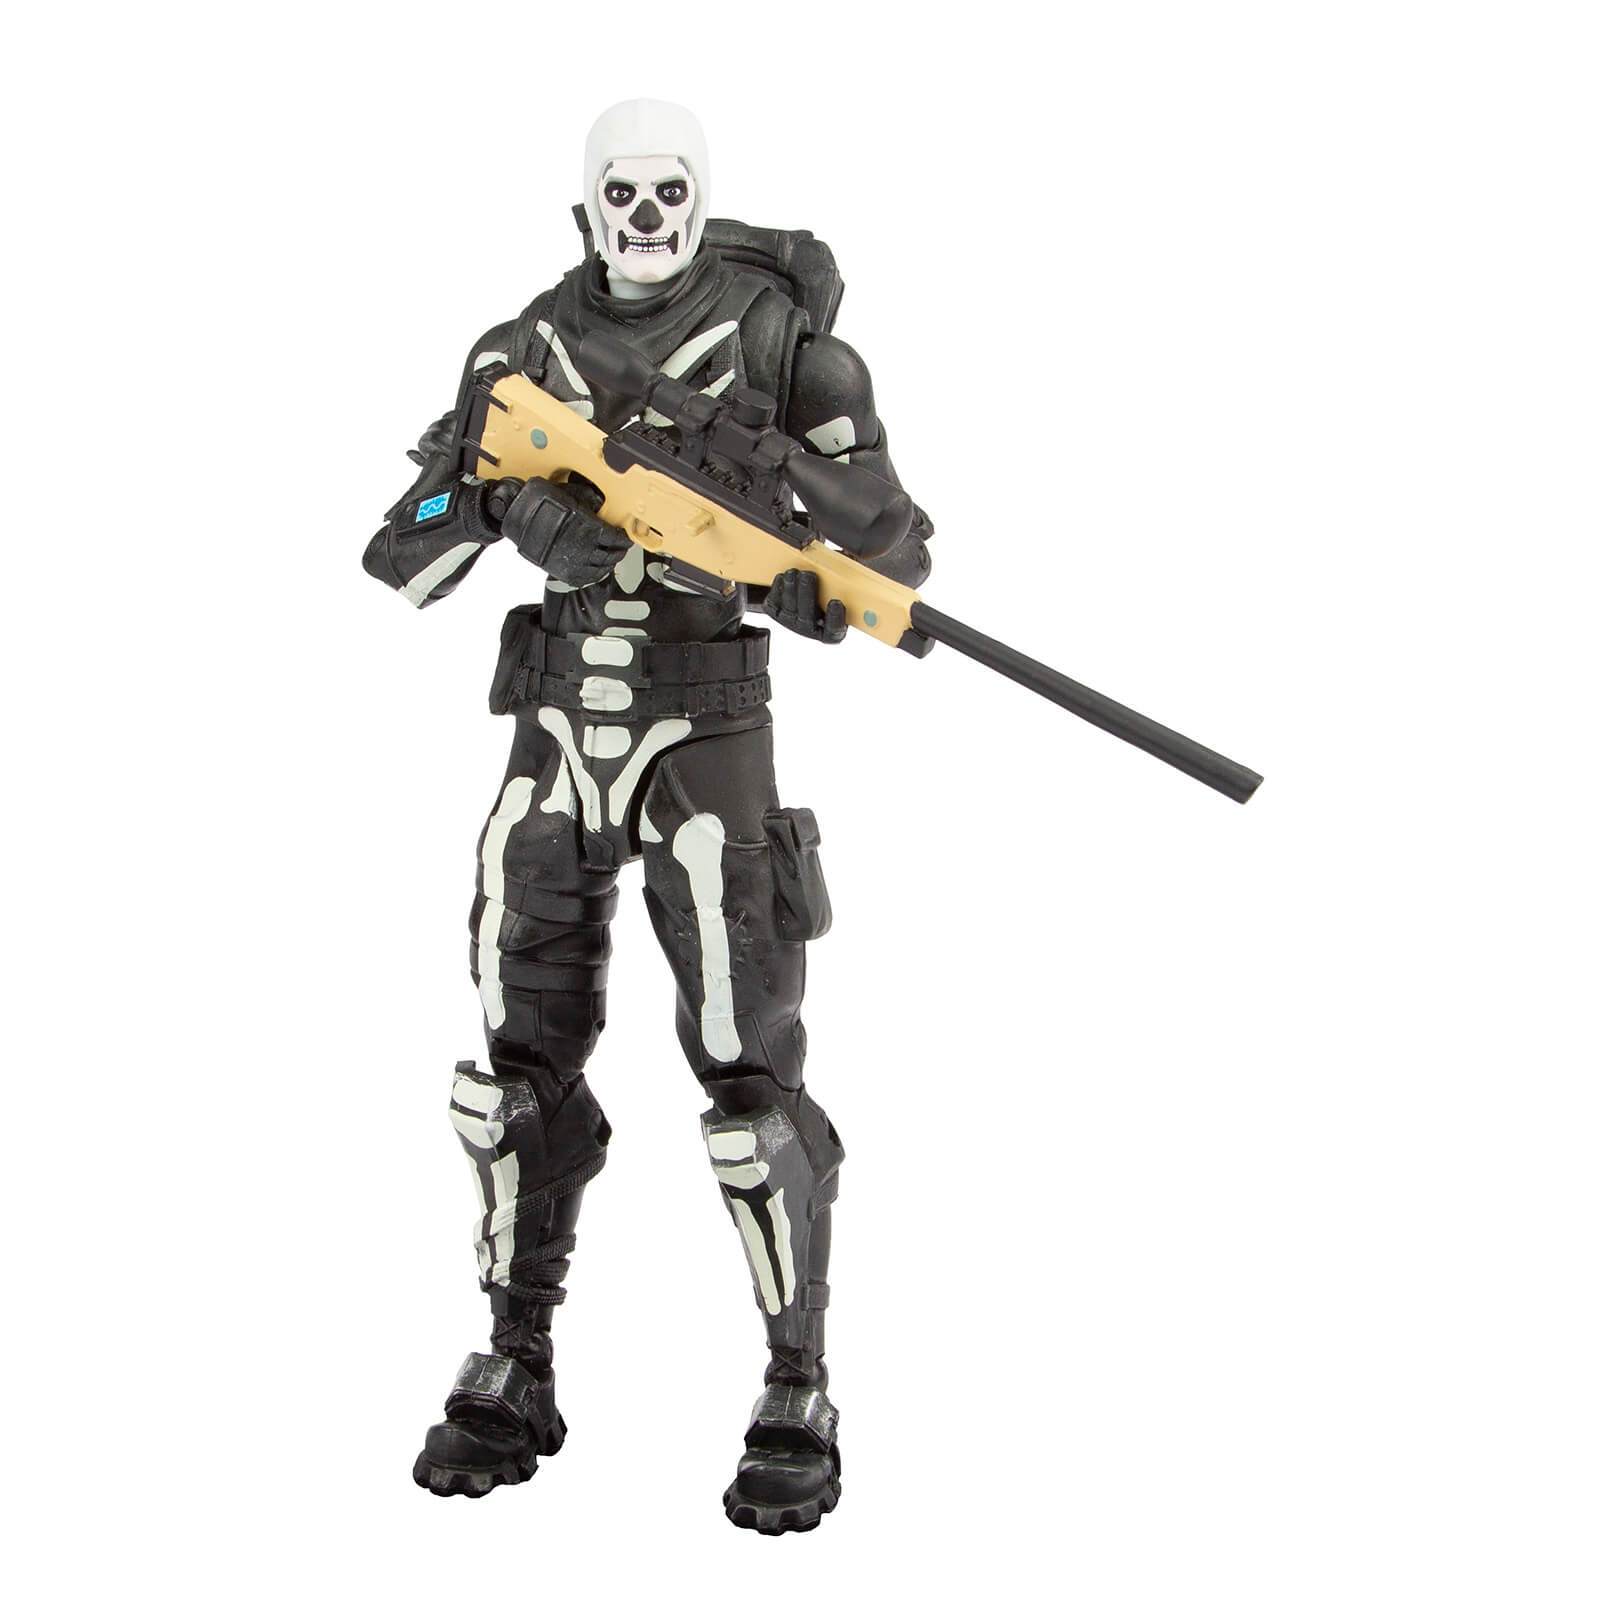 Fortnite Series 1 Skull Trooper Action Figure.